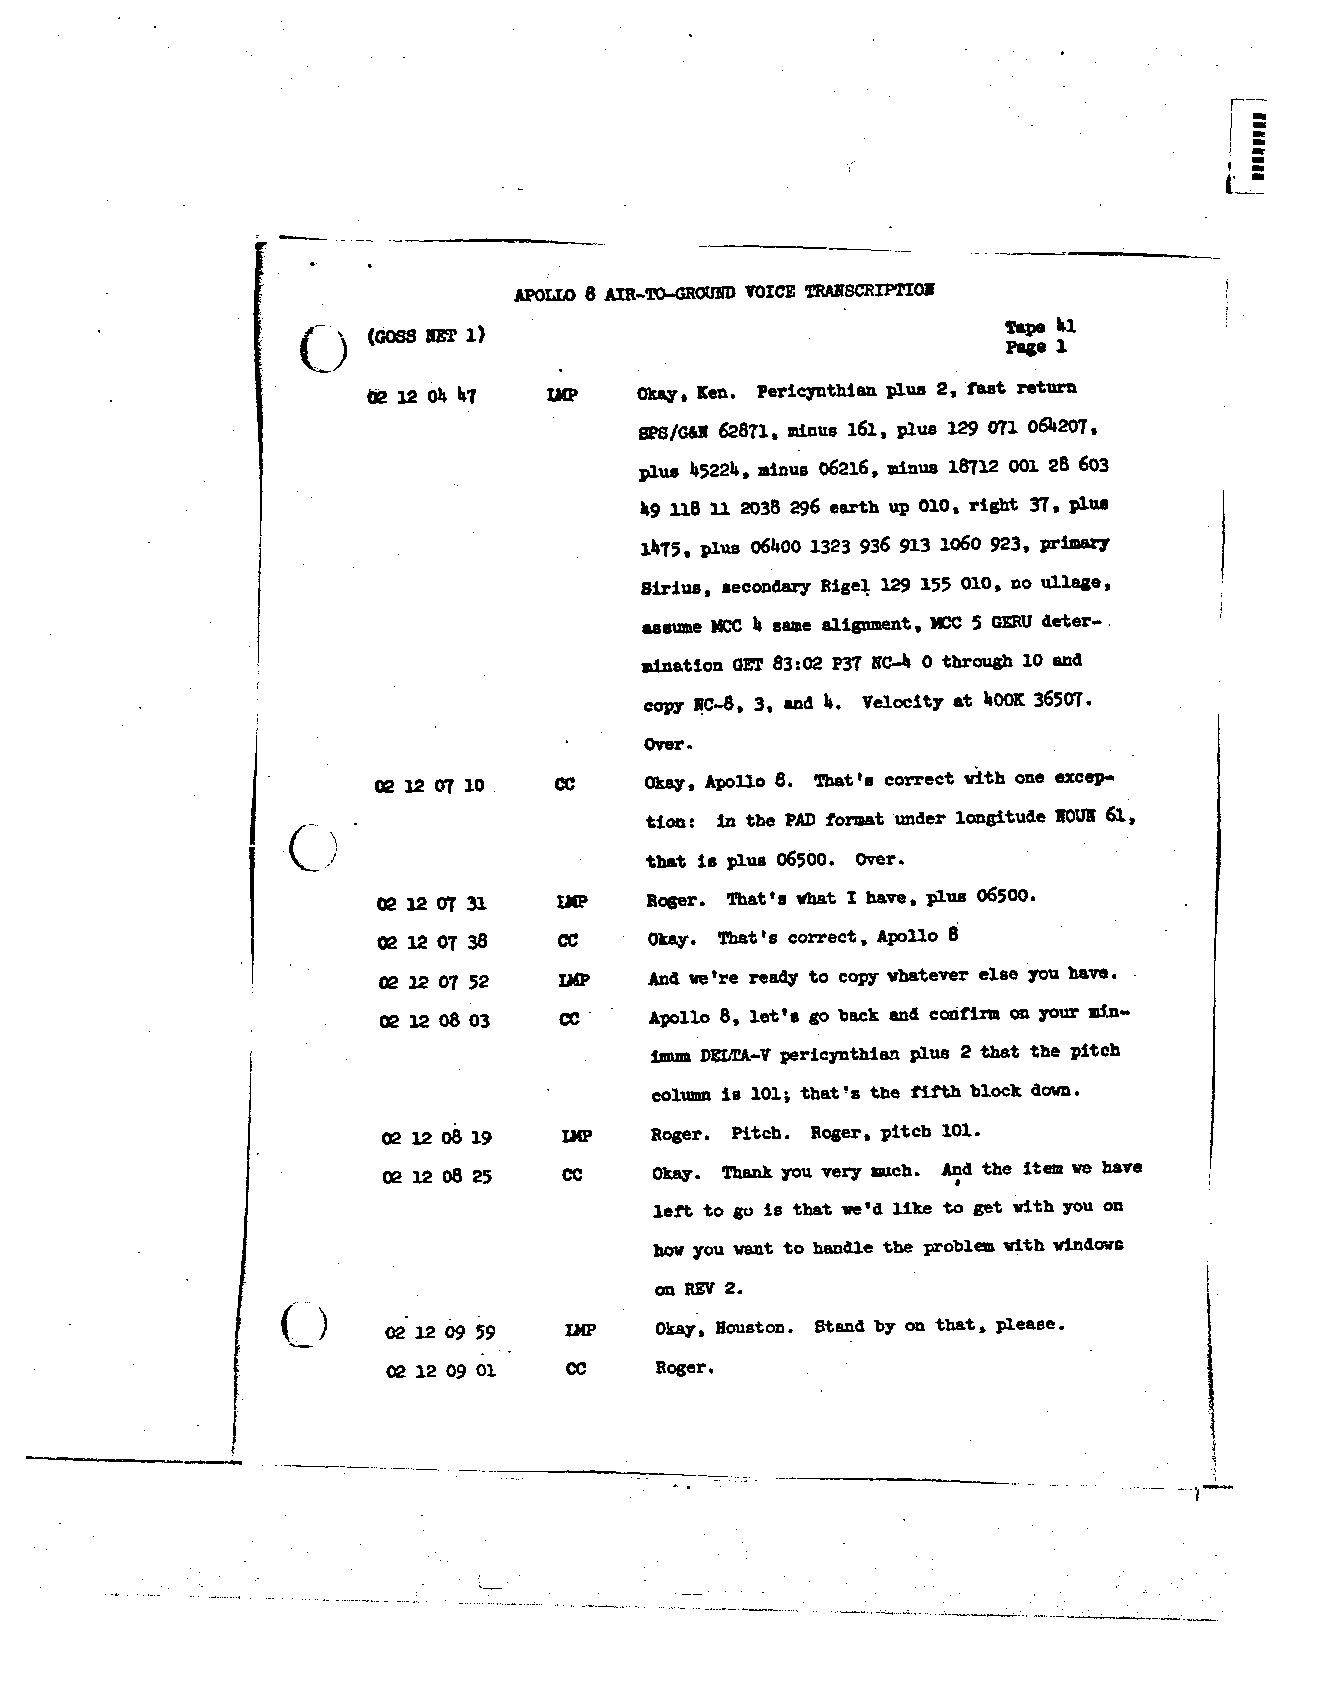 Page 312 of Apollo 8’s original transcript